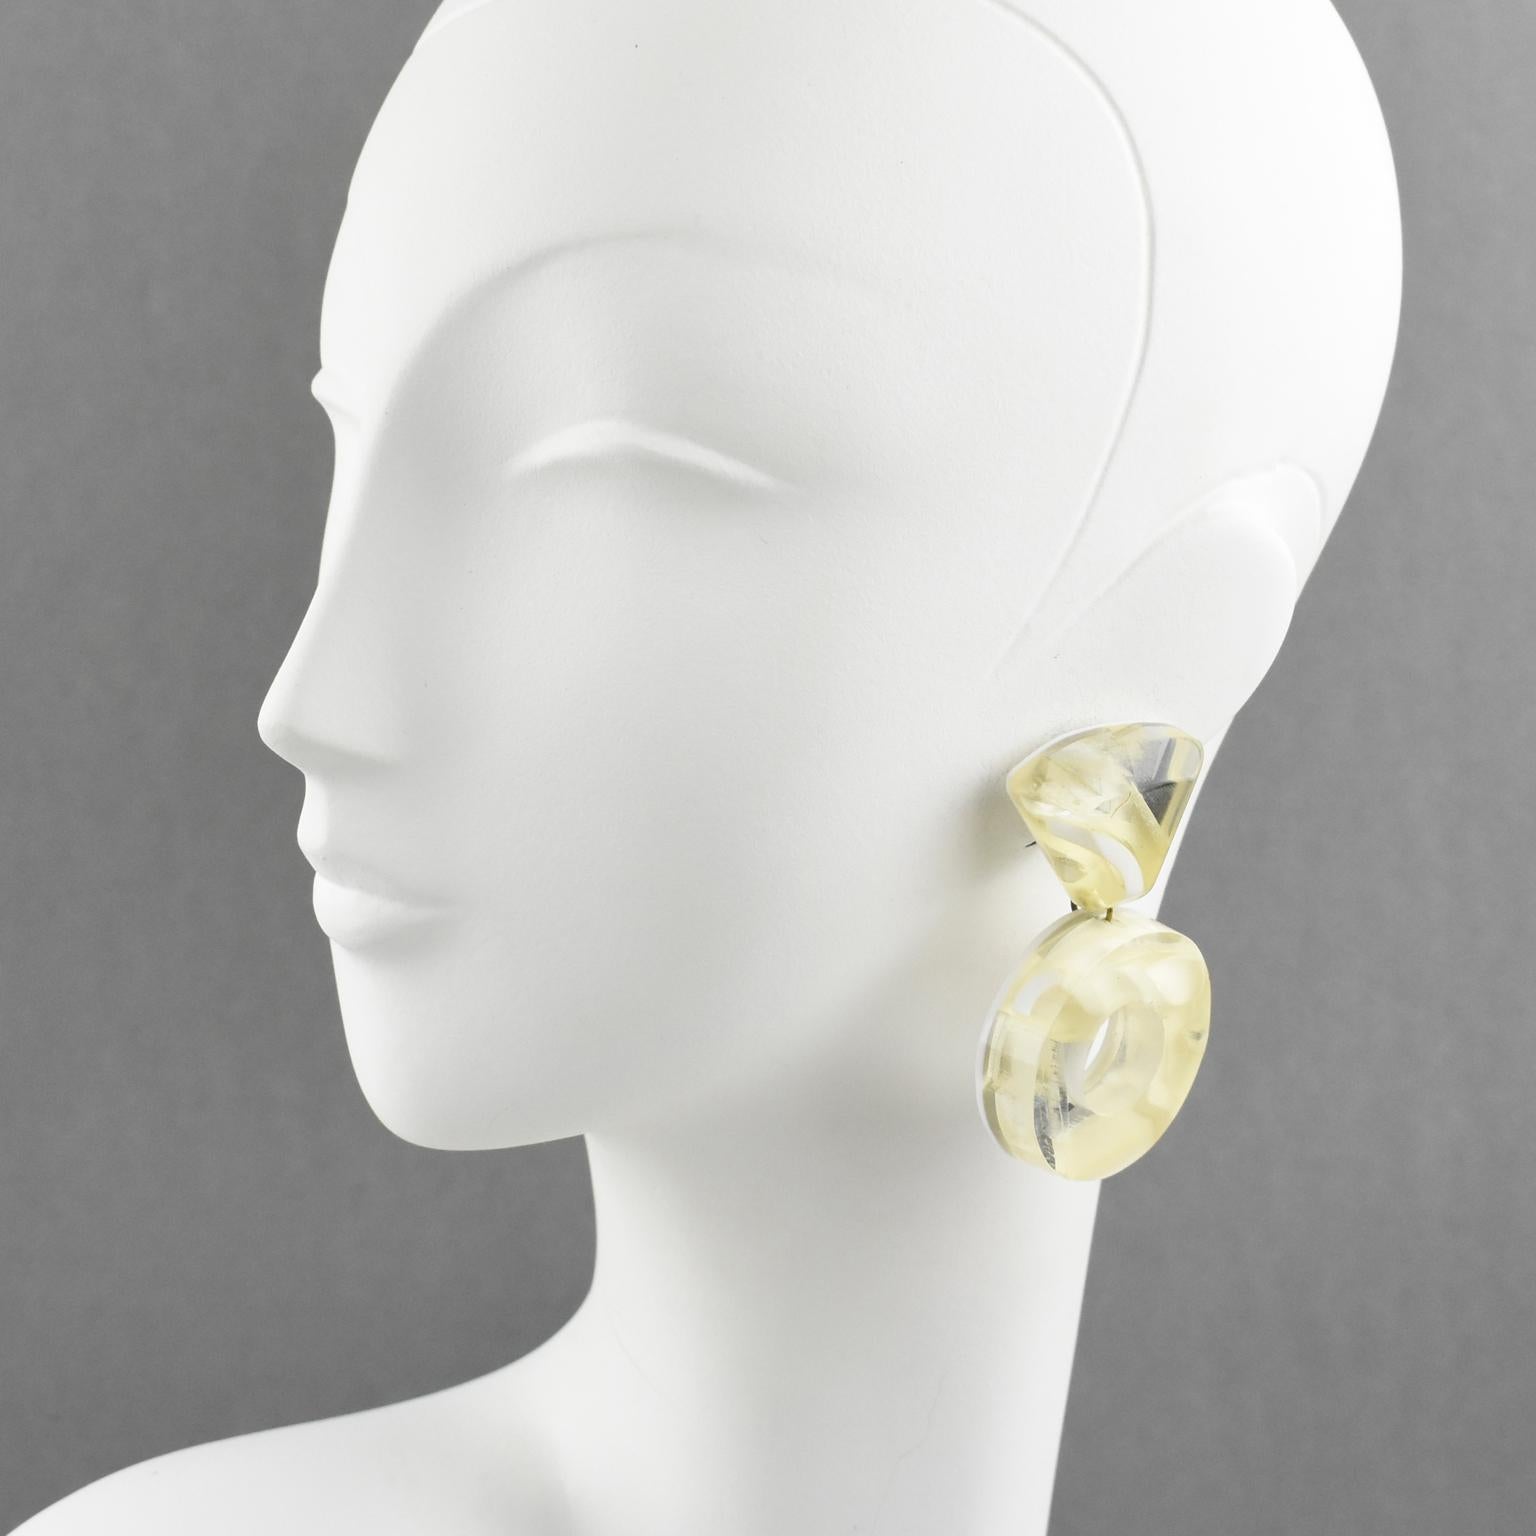 Harriet Bauknight hat für Kaso diese atemberaubenden Ohrringe aus Lucit entworfen. Die riesige, baumelnde Donut-Form mit geometrischem Design besteht aus mehrschichtigem Lucite mit Einschlüssen. Die Stücke haben ein kontrastreiches Muster in einem